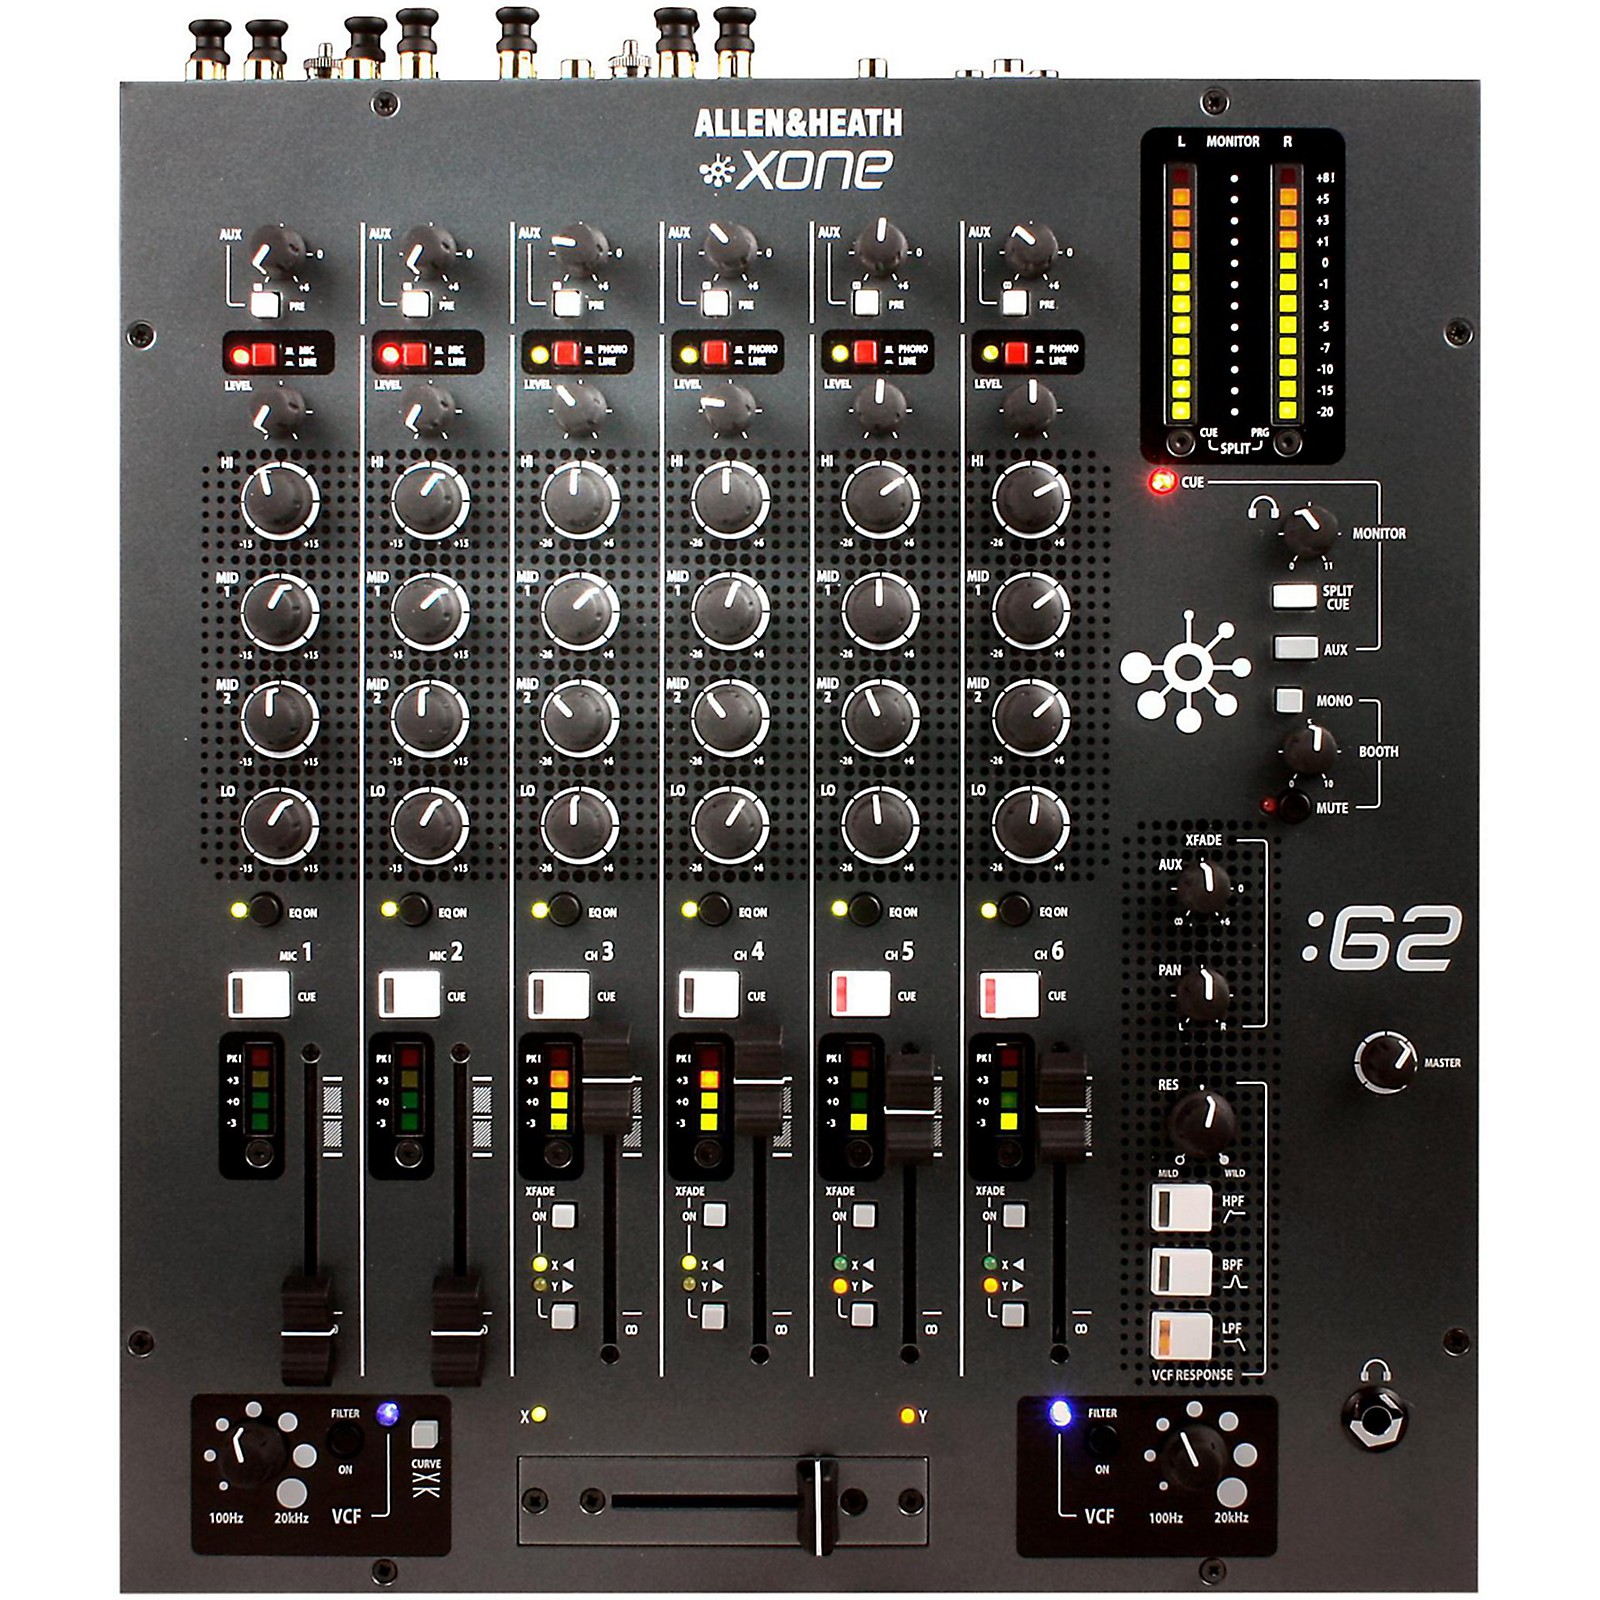 multi channel recording mixer